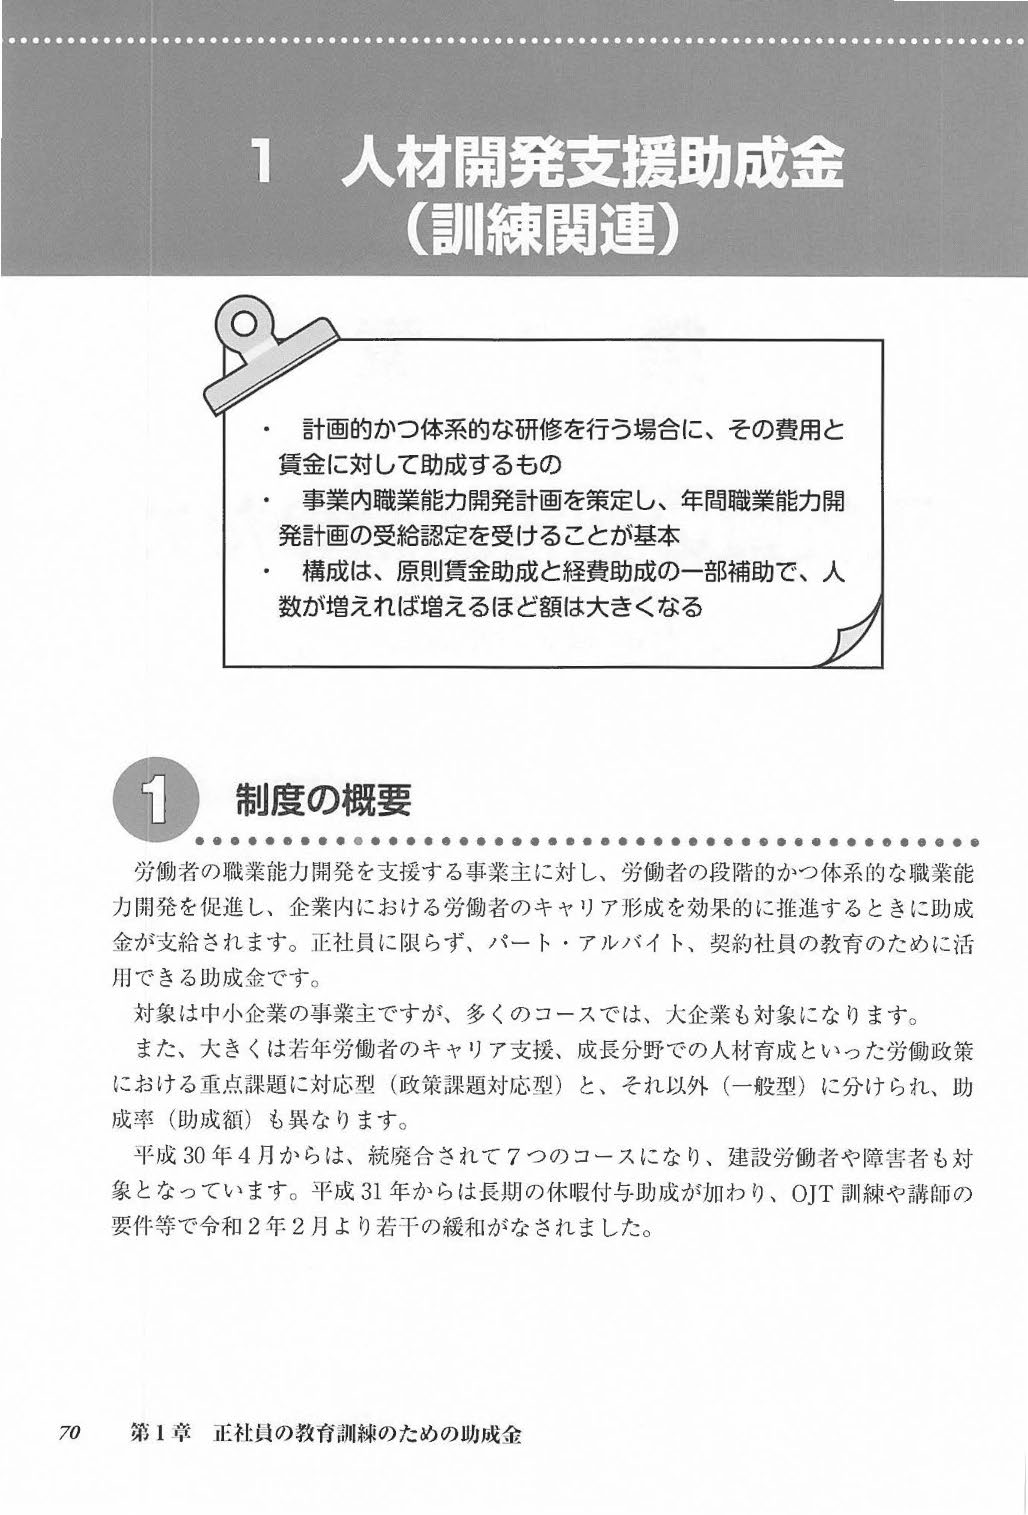 9訂版 雇用関係助成金 申請・手続マニュアル | 日本法令オンラインショップ